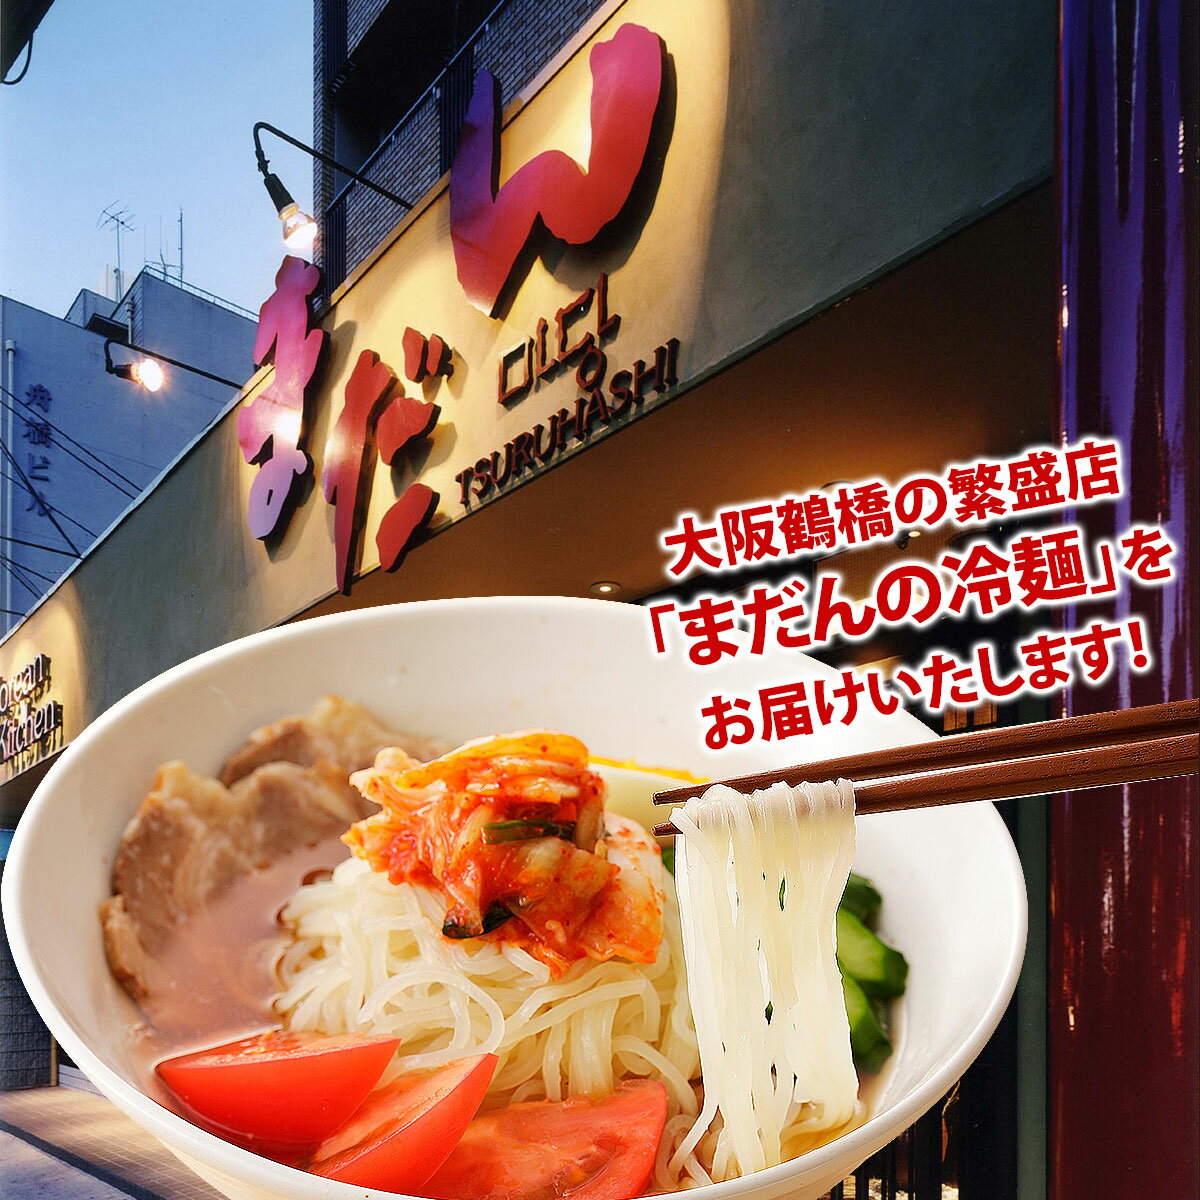 大阪鶴橋「まだん」の冷麺12食セッ